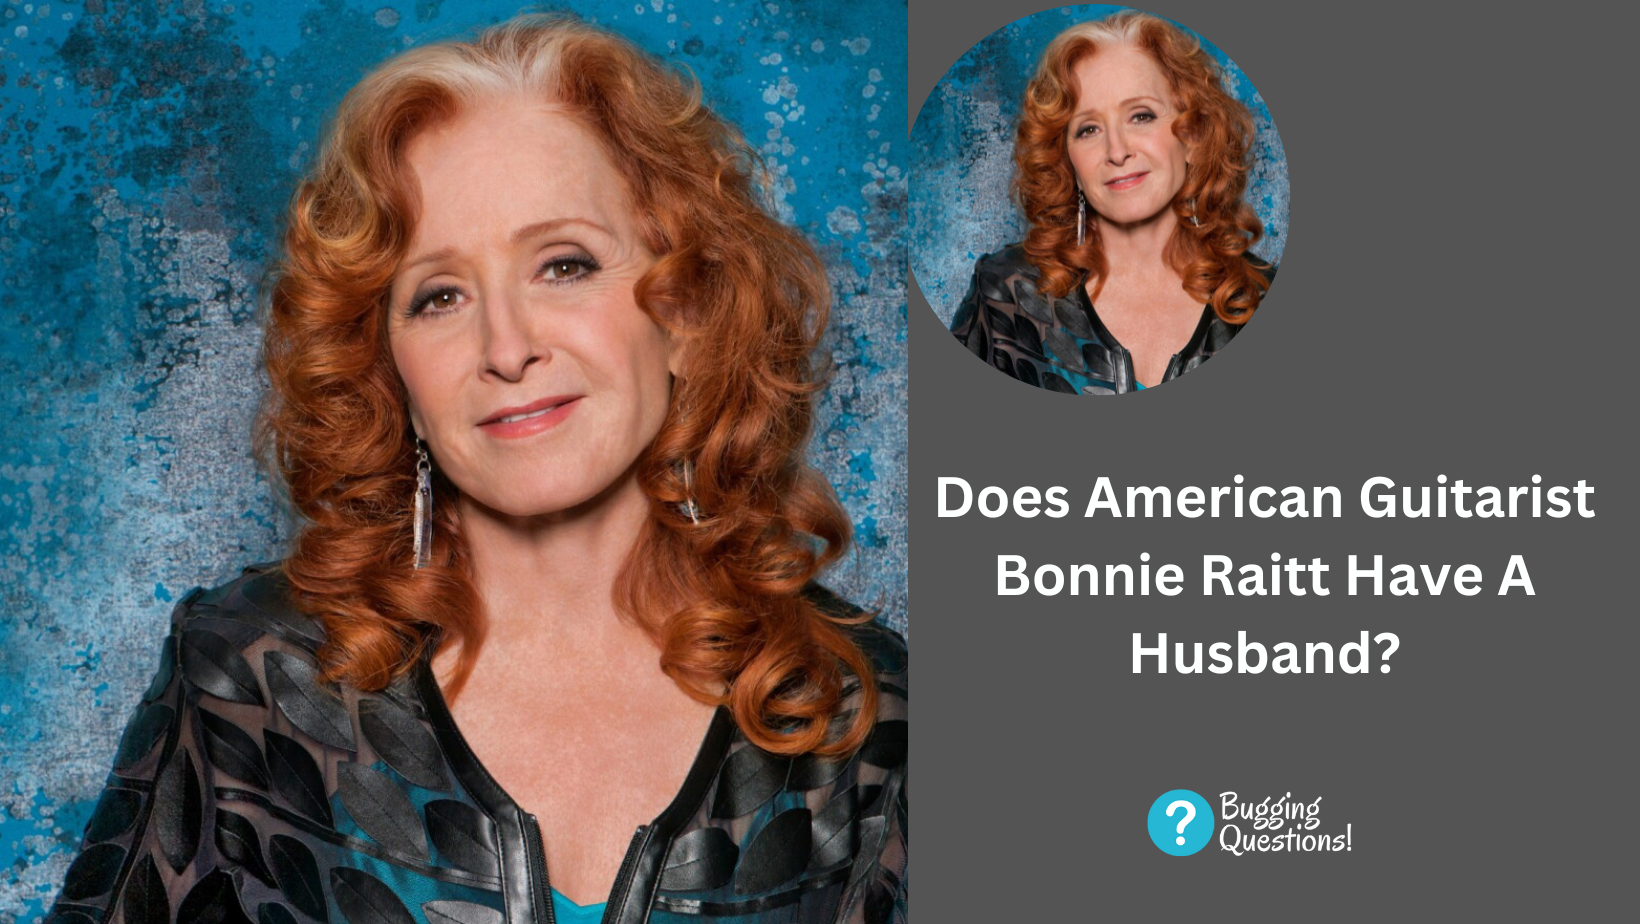 Does American Guitarist Bonnie Raitt Have A Husband?